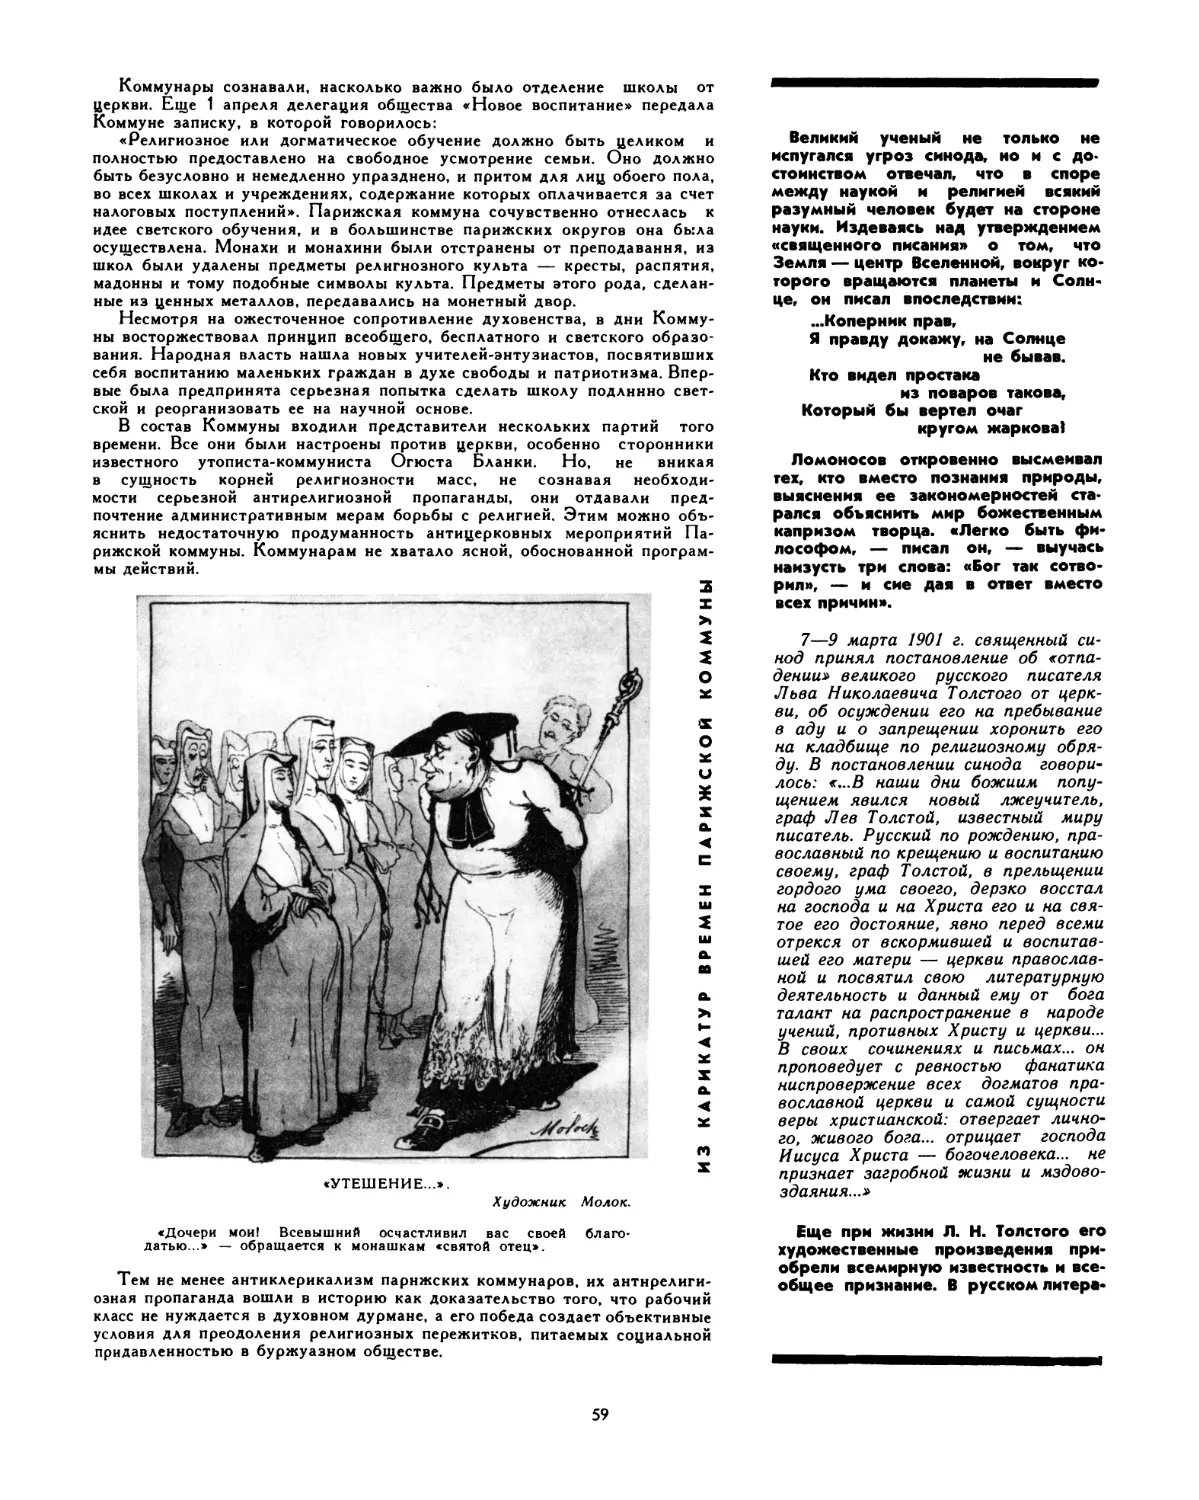 7—9 марта 1901 г. Священный синод принял постановление об «отпадении» Л. Н. Толстого от церкви